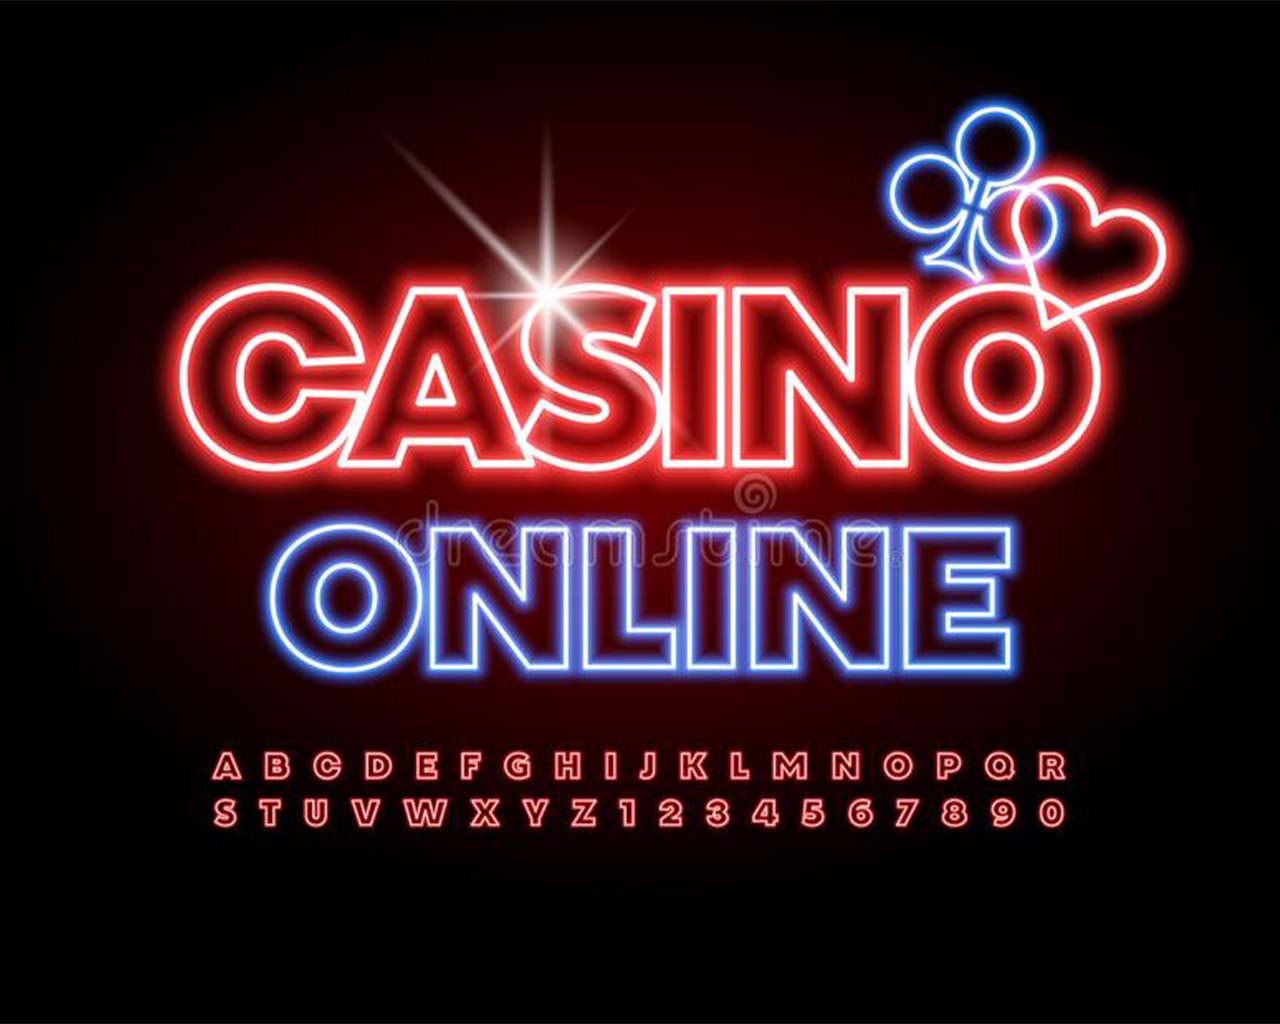 Cómo dejar casinos online legales en chile en 5 días